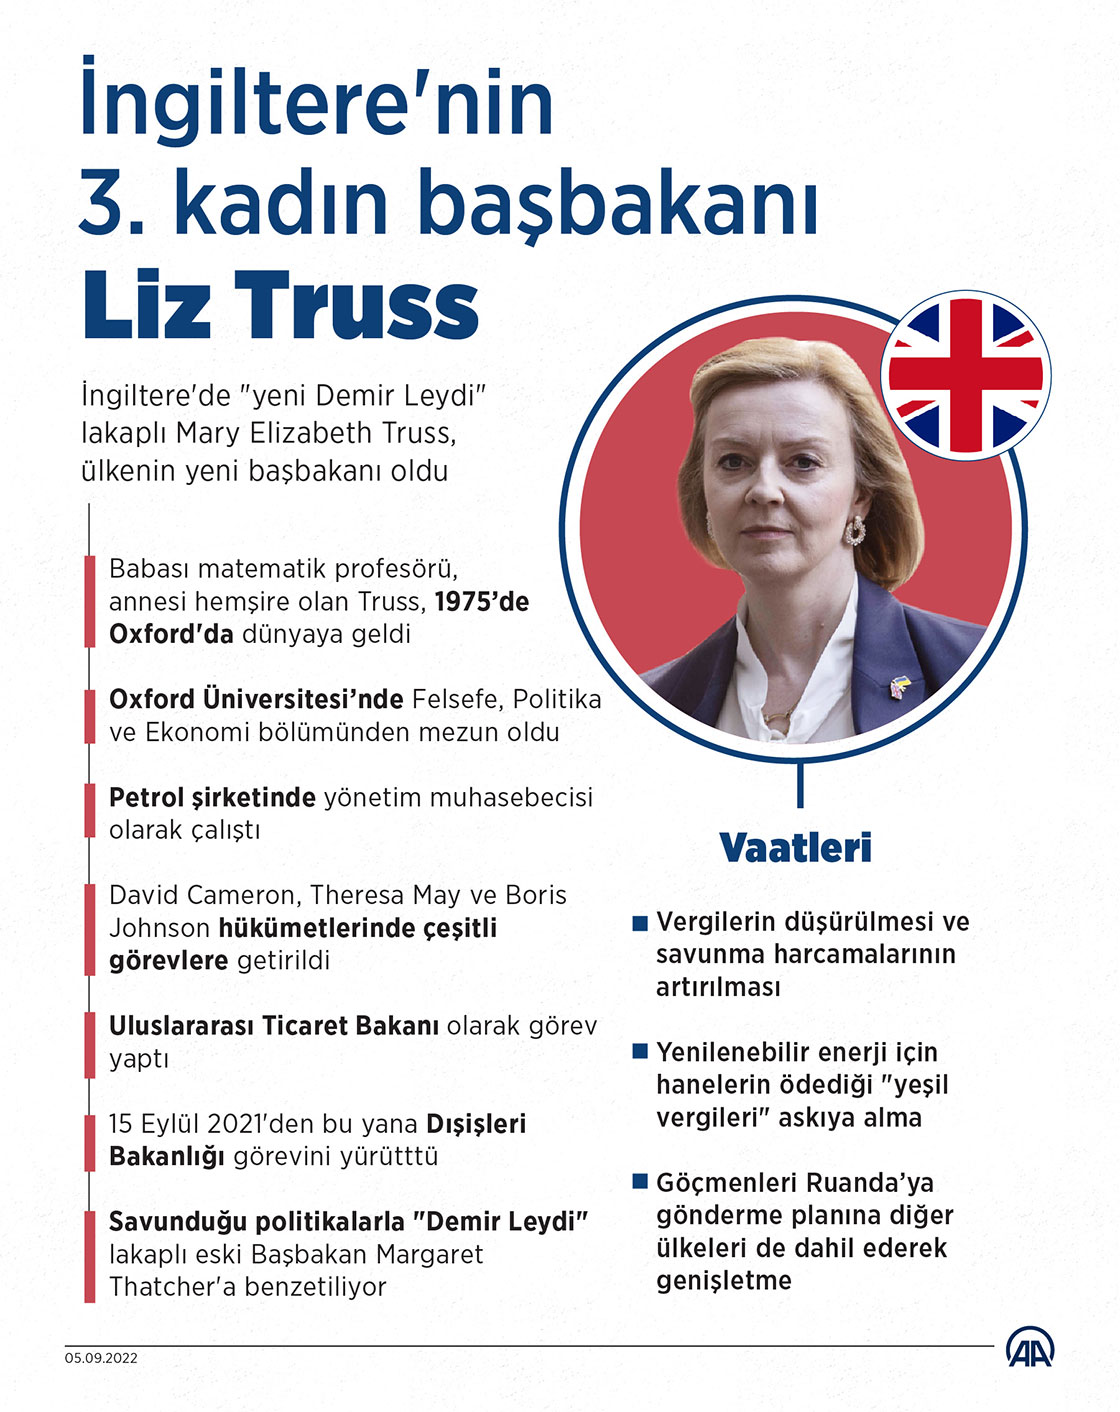 İngiltere'nin yeni "Demir Leydi"si Liz Truss, ülkenin 3. kadın başbakanı oldu